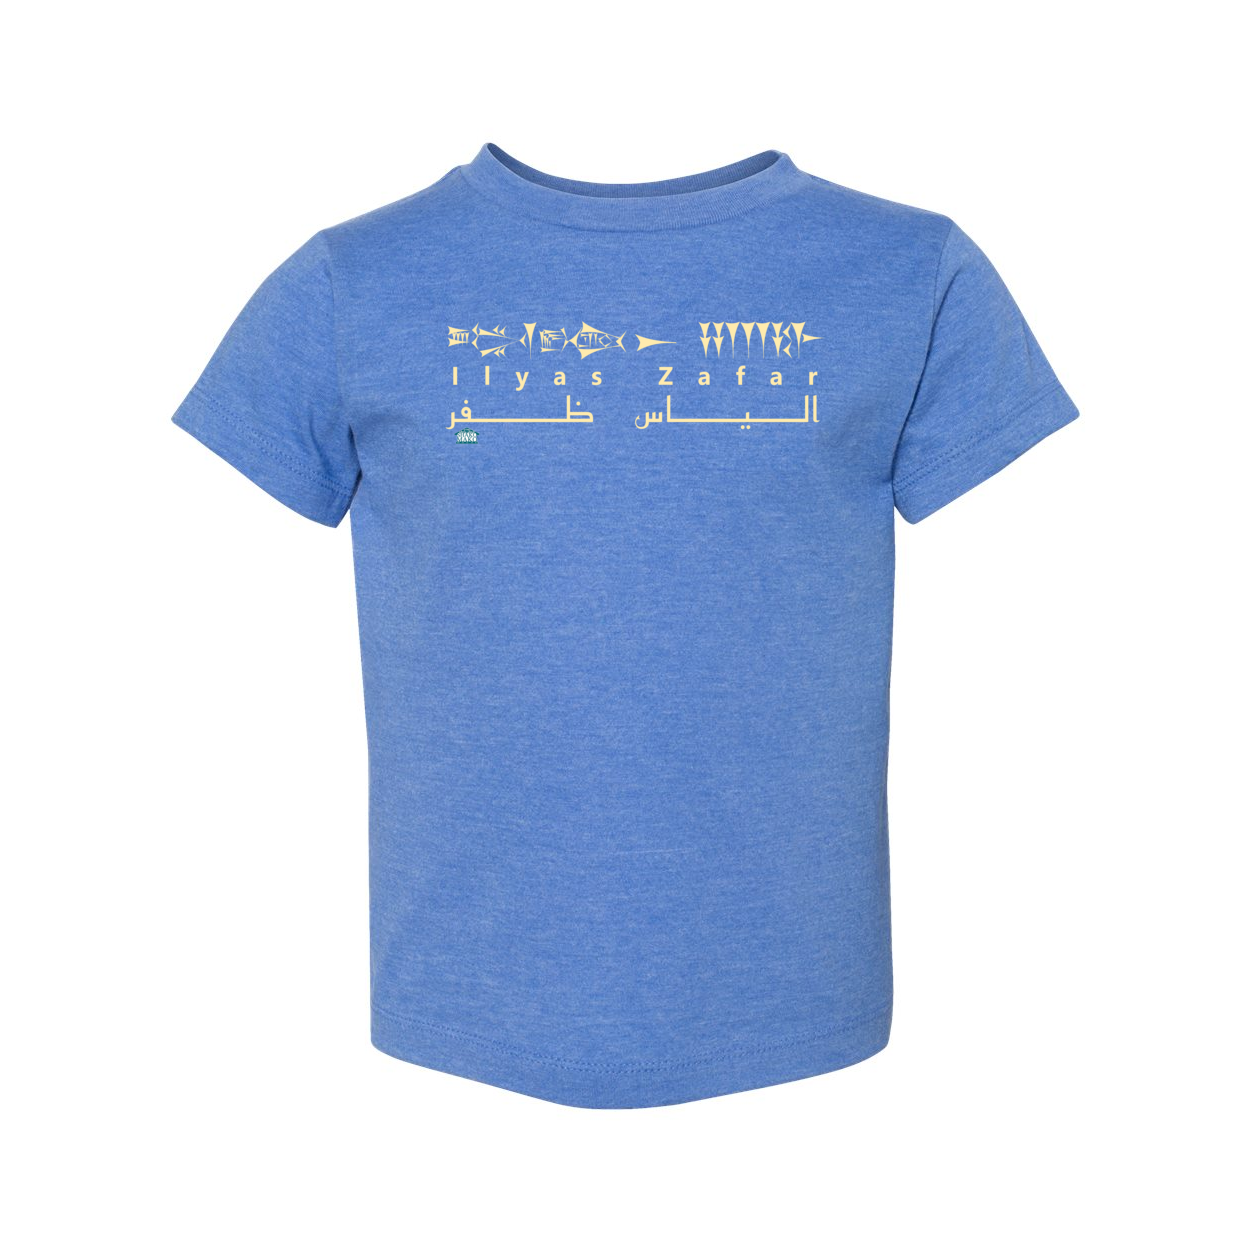 Cuneiform Ilyas Zafar Toddler T Shirt